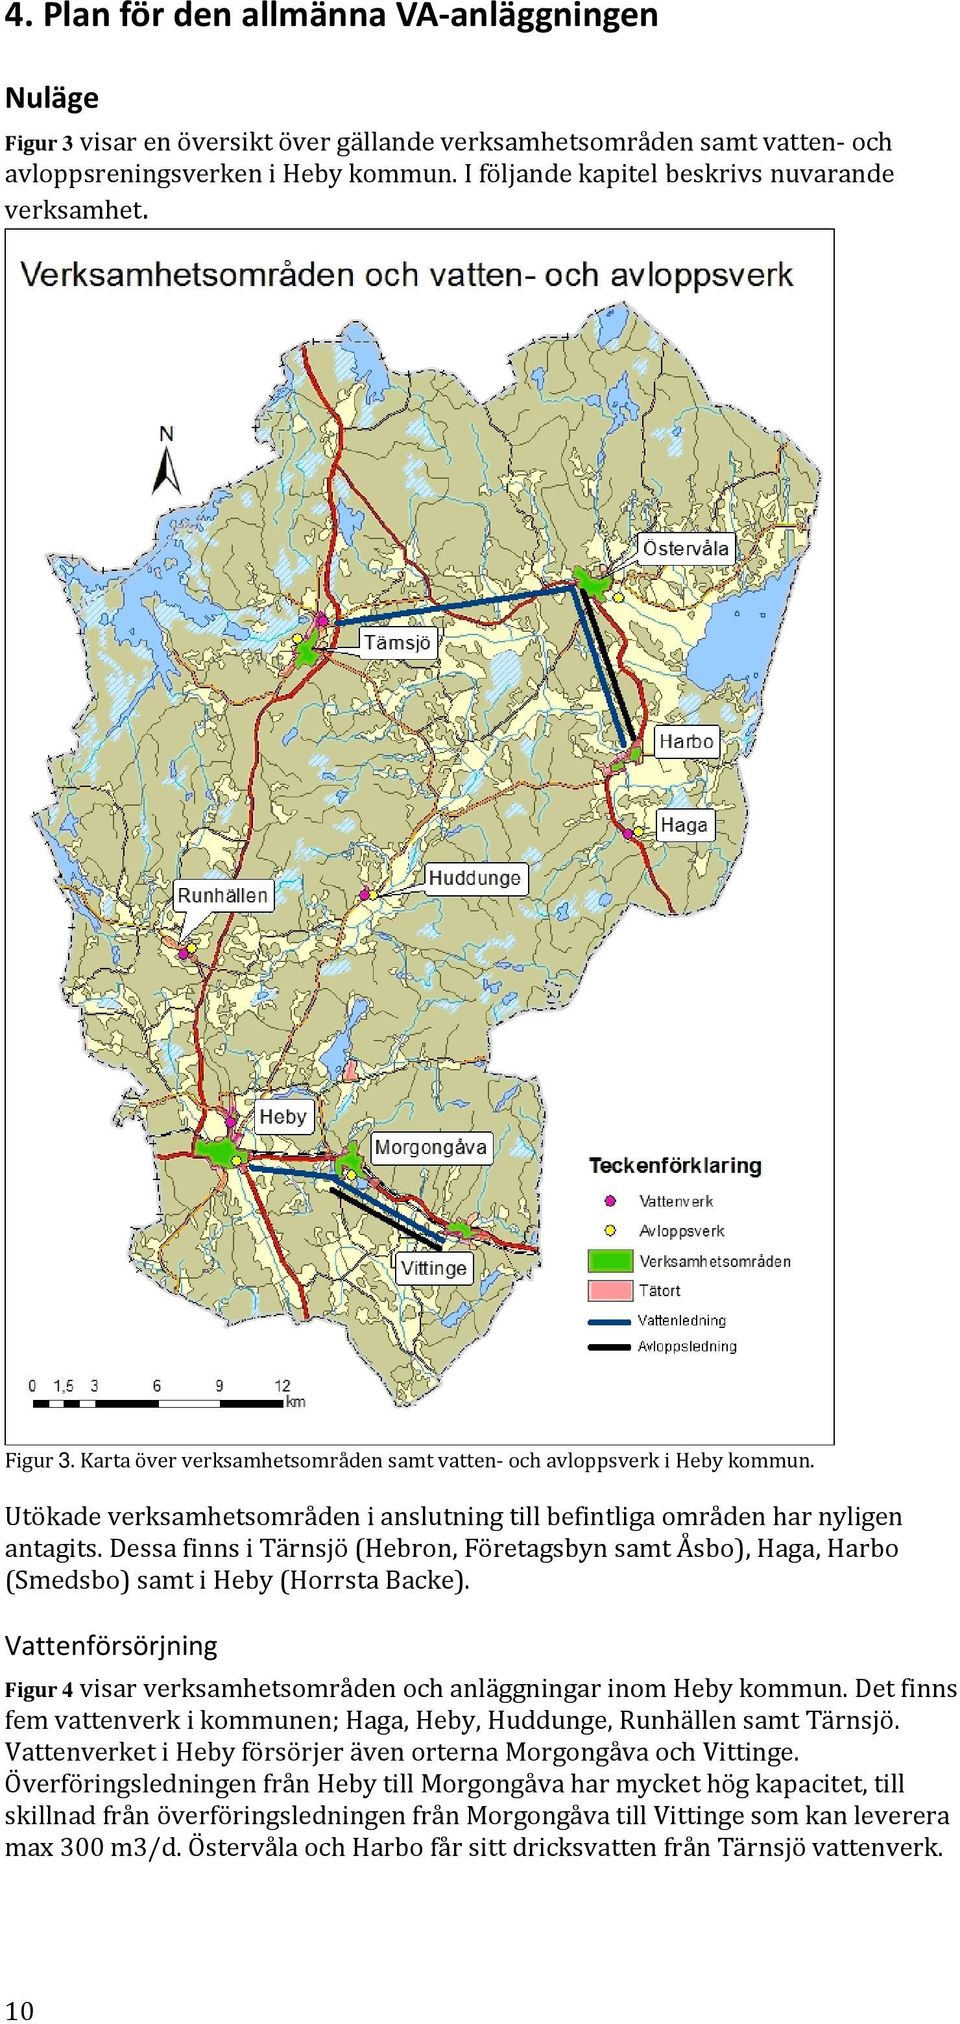 Utökade verksamhetsområden i anslutning till befintliga områden har nyligen antagits. Dessa finns i Tärnsjö (Hebron, Företagsbyn samt Åsbo), Haga, Harbo (Smedsbo) samt i Heby (Horrsta Backe).